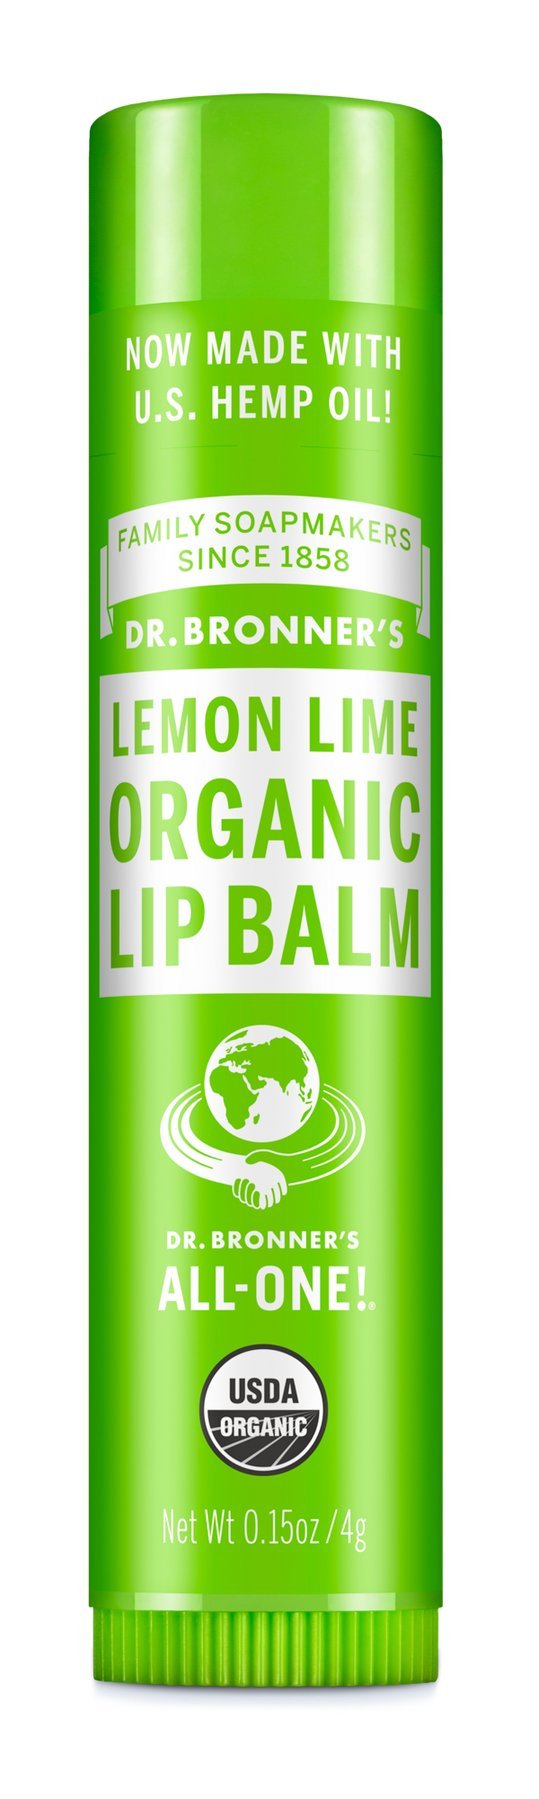 Organic Lemon Lime Lip Balm